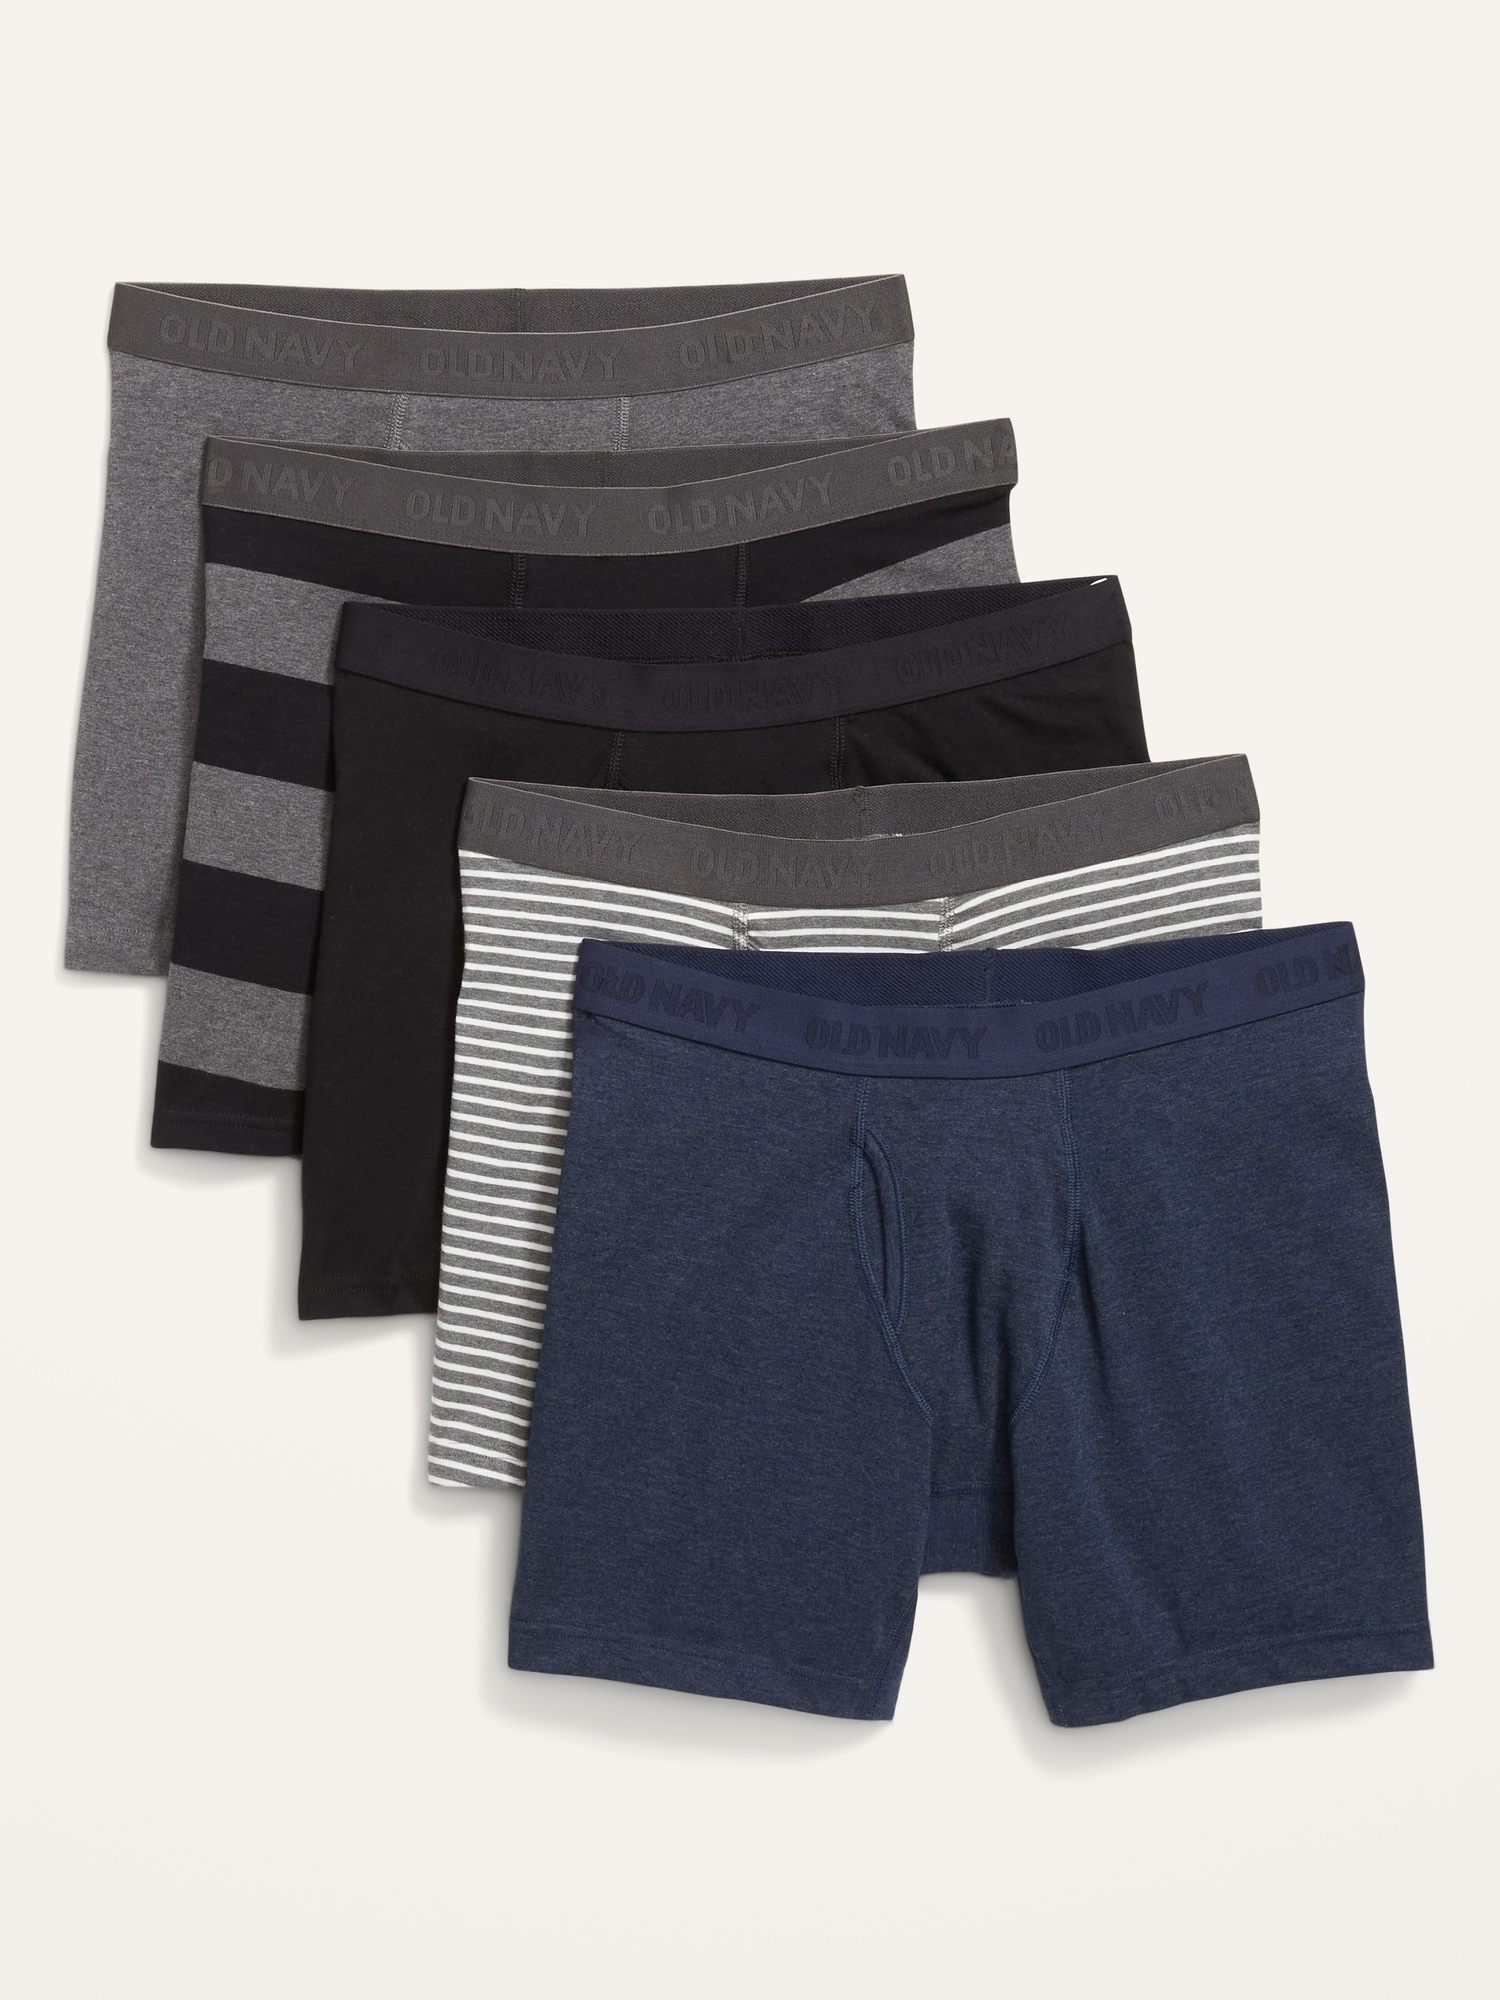 Soft-Washed Built-In Flex Boxer-Brief Underwear 5-Pack for Men -- 6.25-inch  inseam